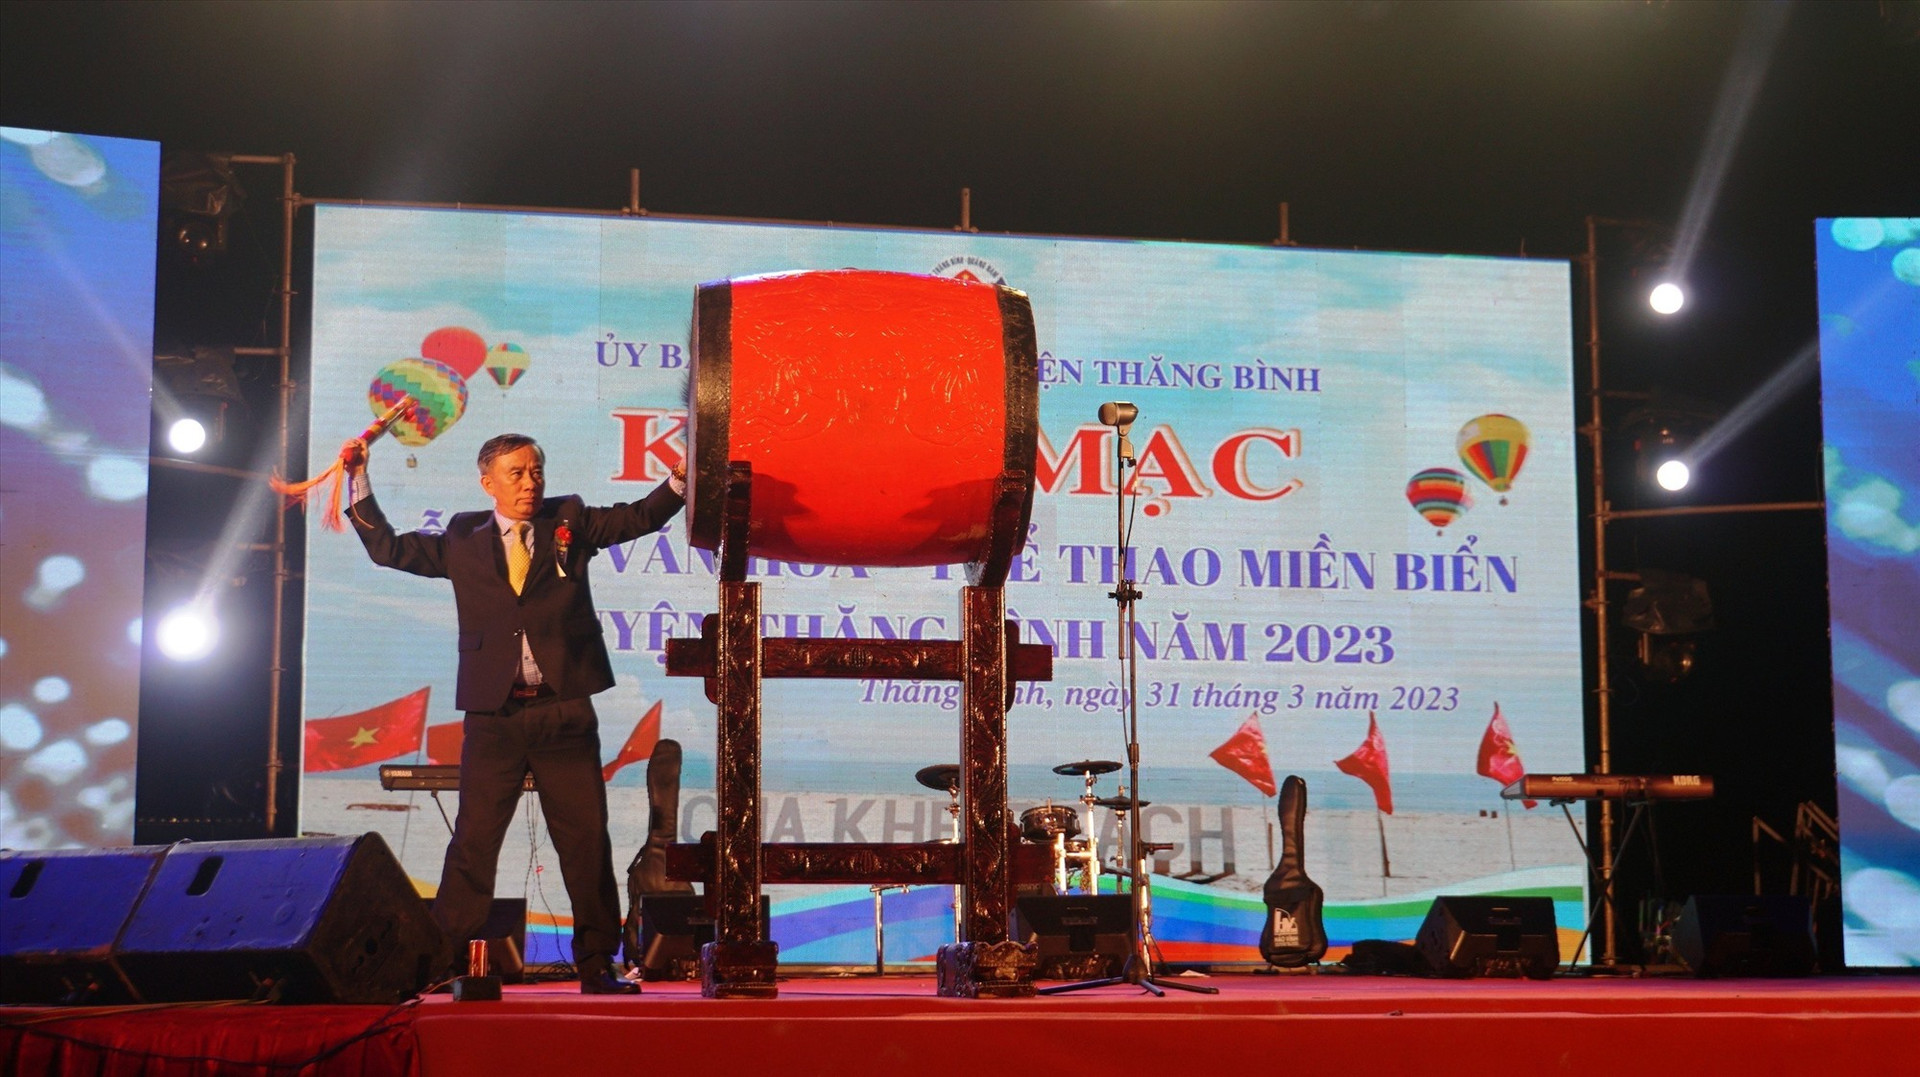 Phó Chủ tịch HĐND tỉnh Trần Xuân Vinh đánh trồng khai mạc Lễ hội văn hóa - thể thao miền biển Thăng Bình năm 2023. Ảnh: H.Q